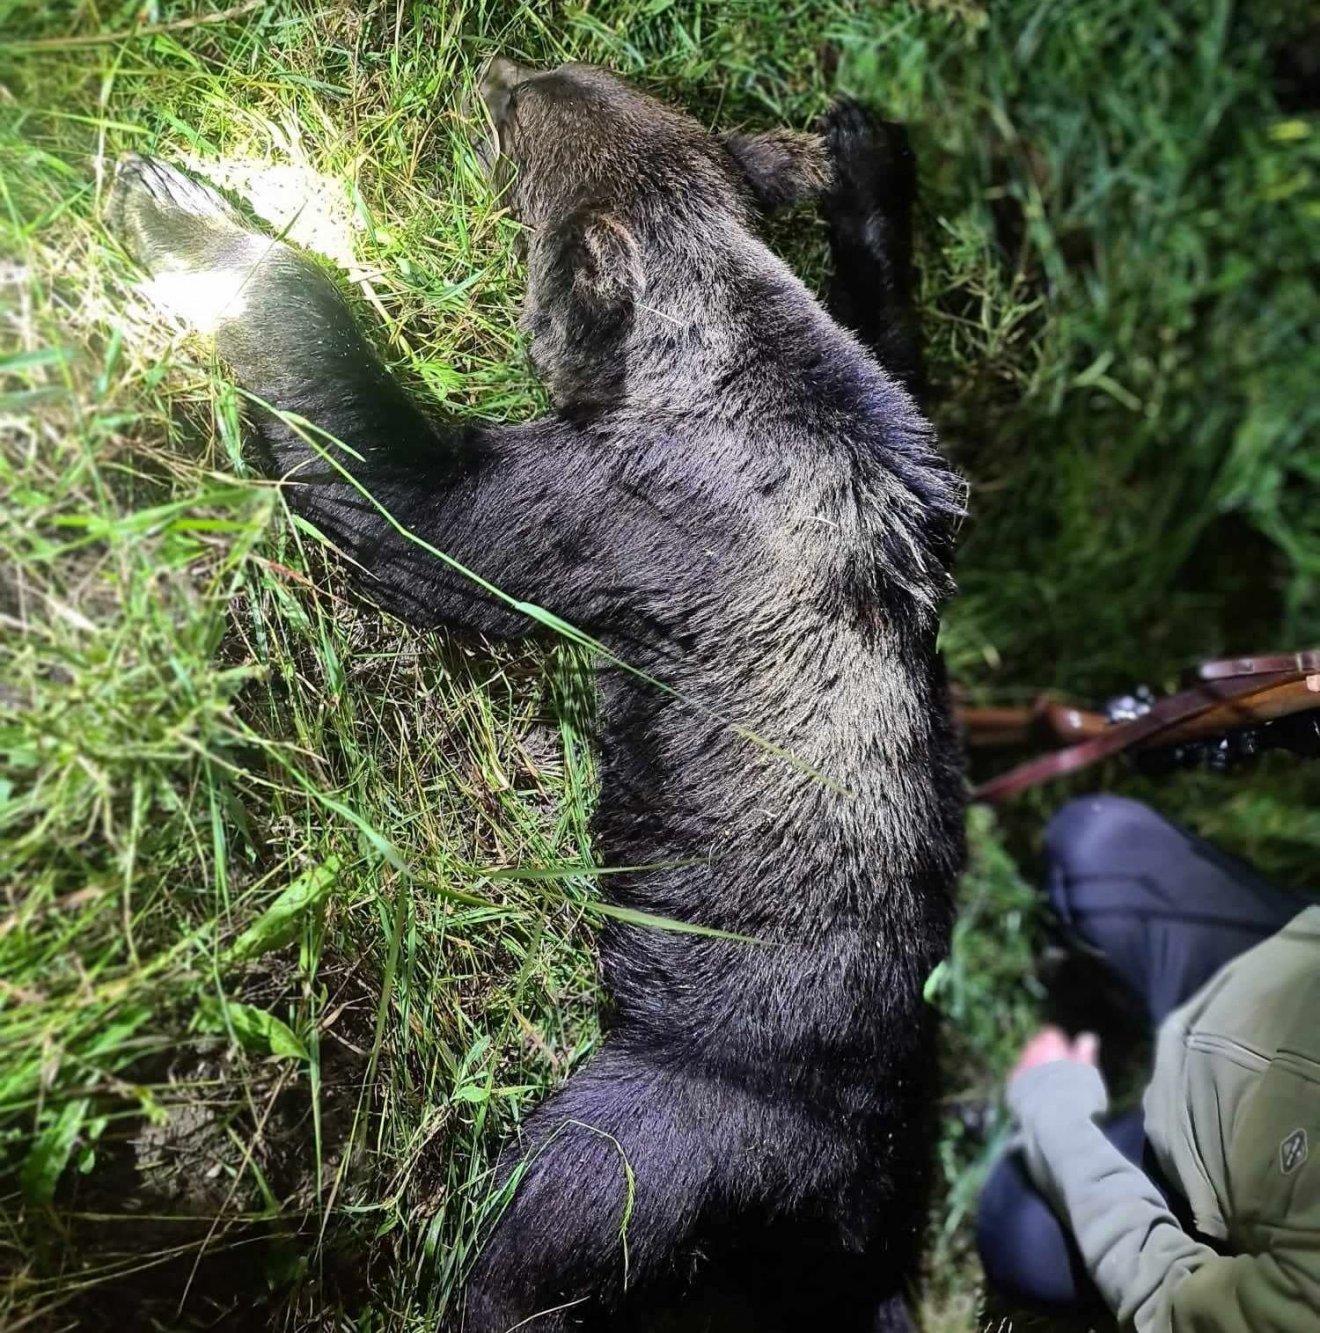 Kilőttek egy veszélyes medvét Szentpálon, kiállítják a trófeáját